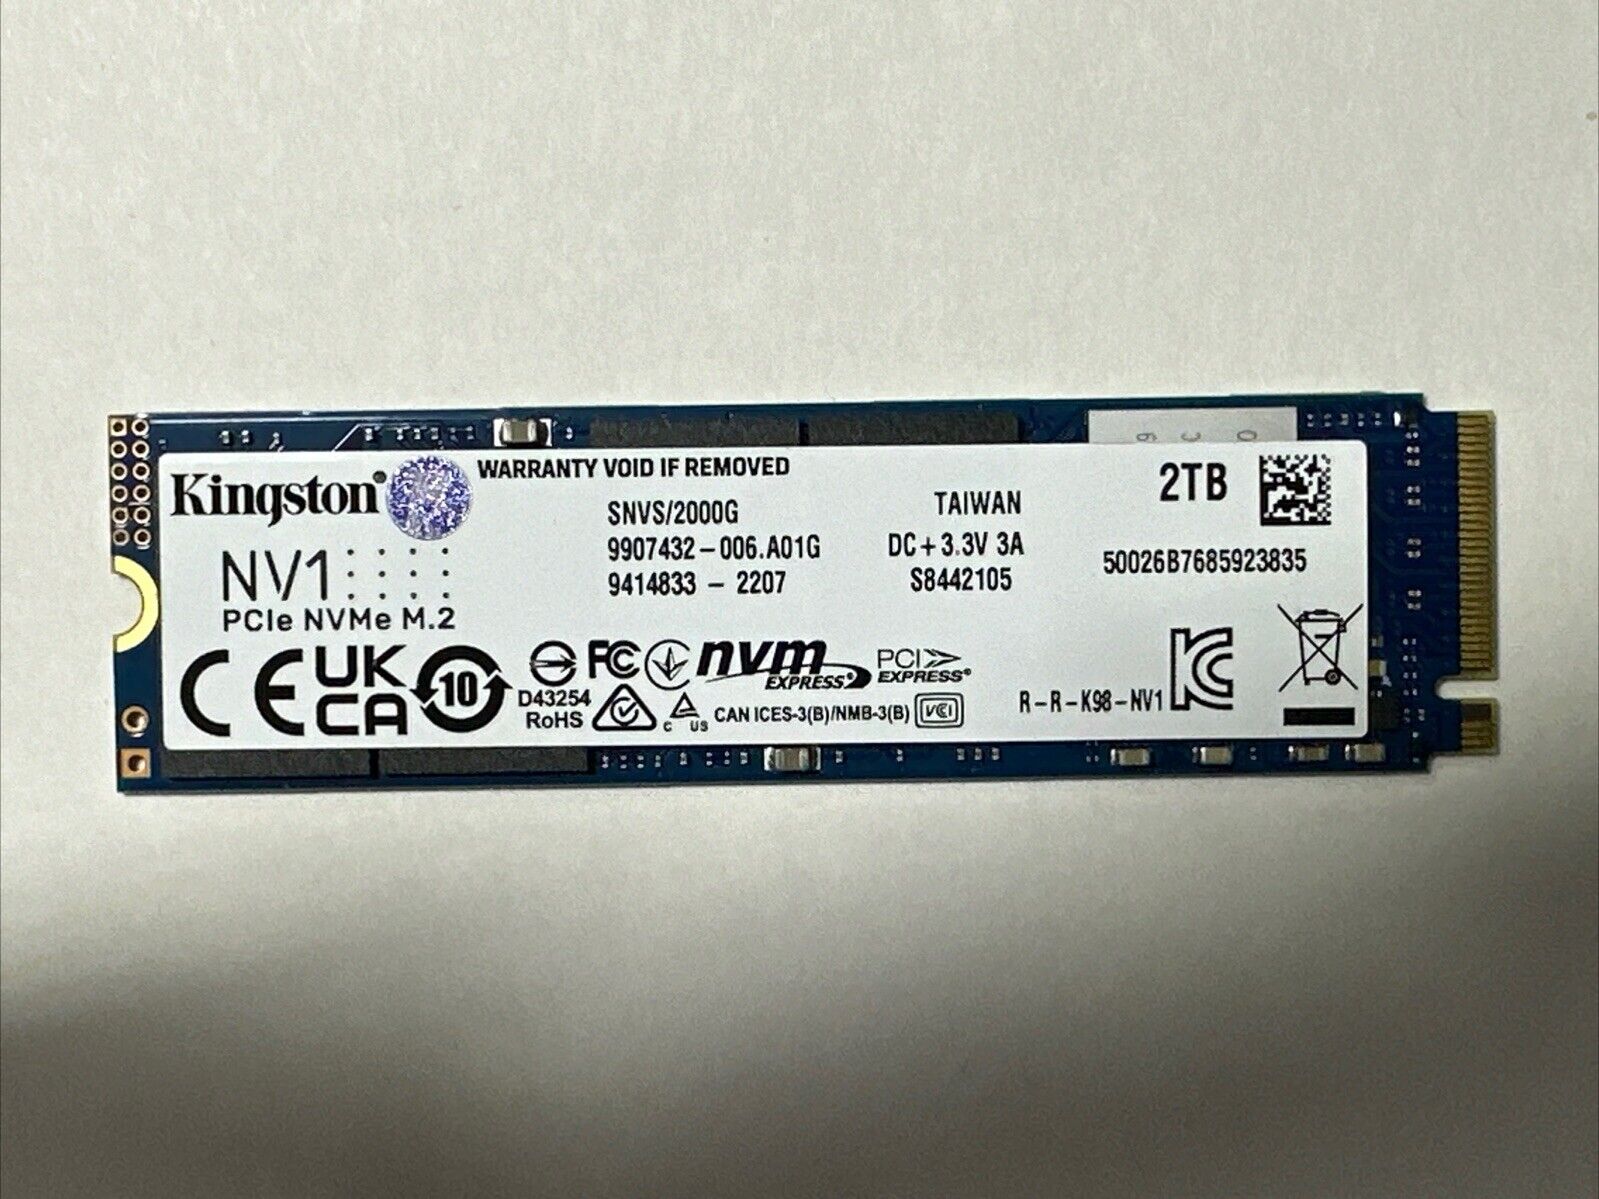 Kingston NV1 2TB PCIe NVMe M.2 Internal SSD (SNVS/2000G)